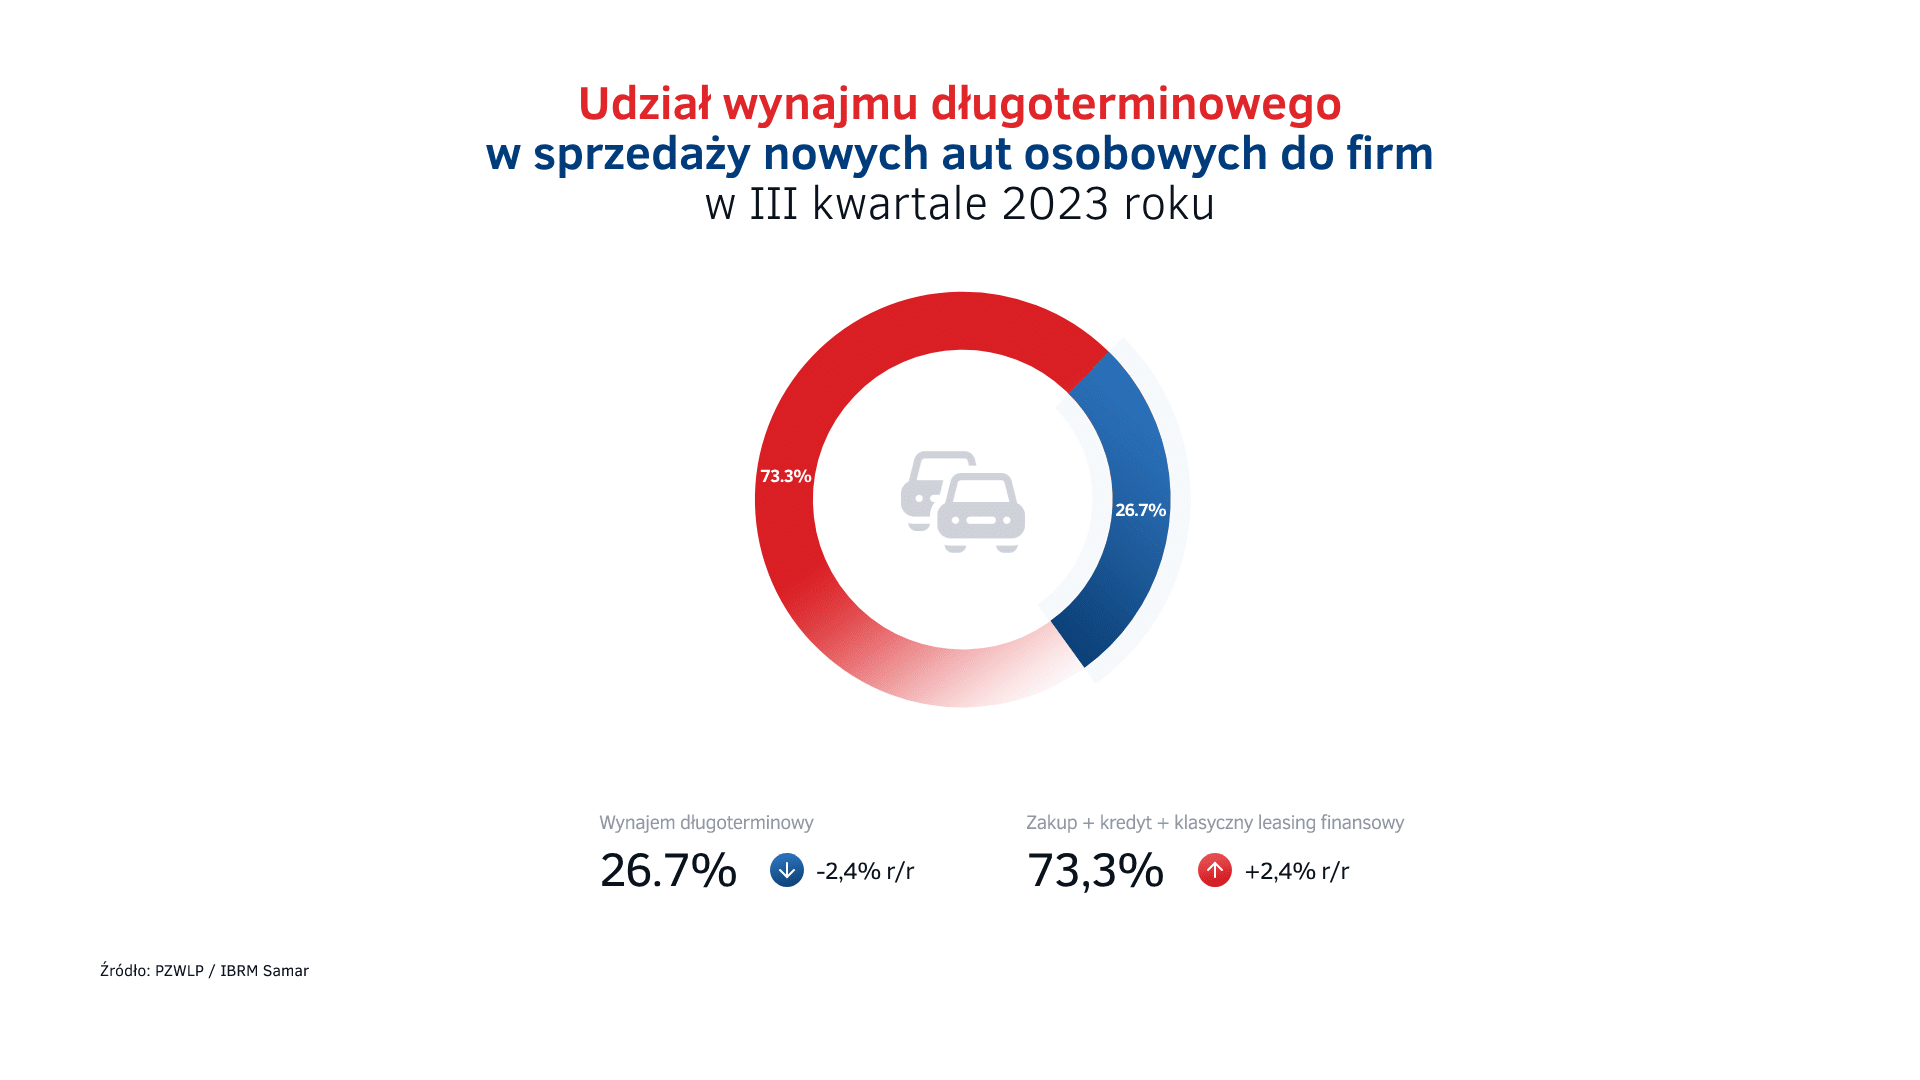 Udział wynajmu długoterminowego w sprzedaży aut do firm w Polsce w III kw. 2023